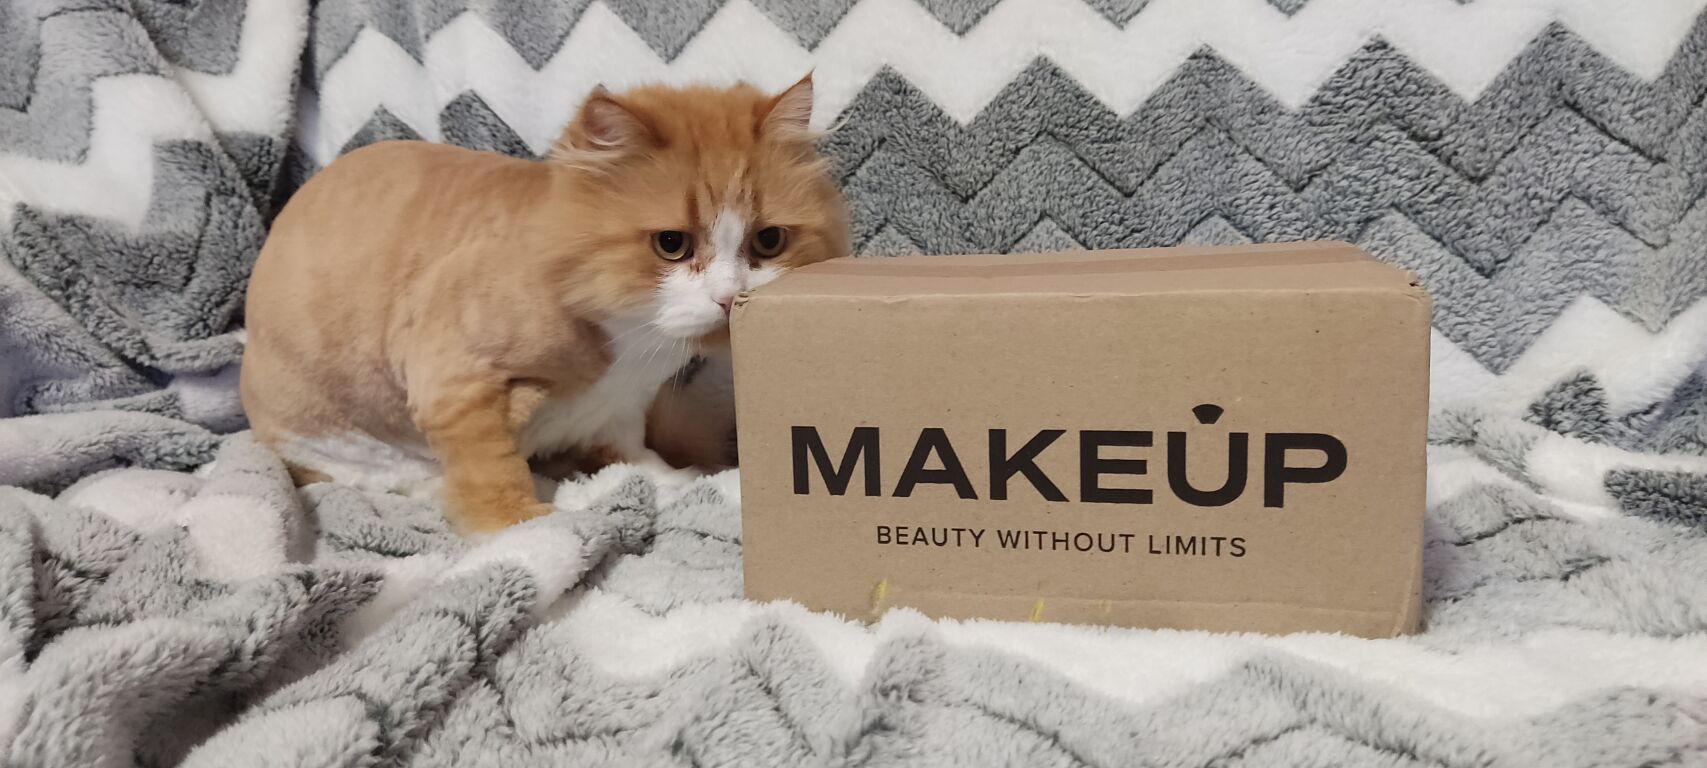 Розпаковувати з котом посилочки від MAKEUP завжди веселіше 😅😅😅